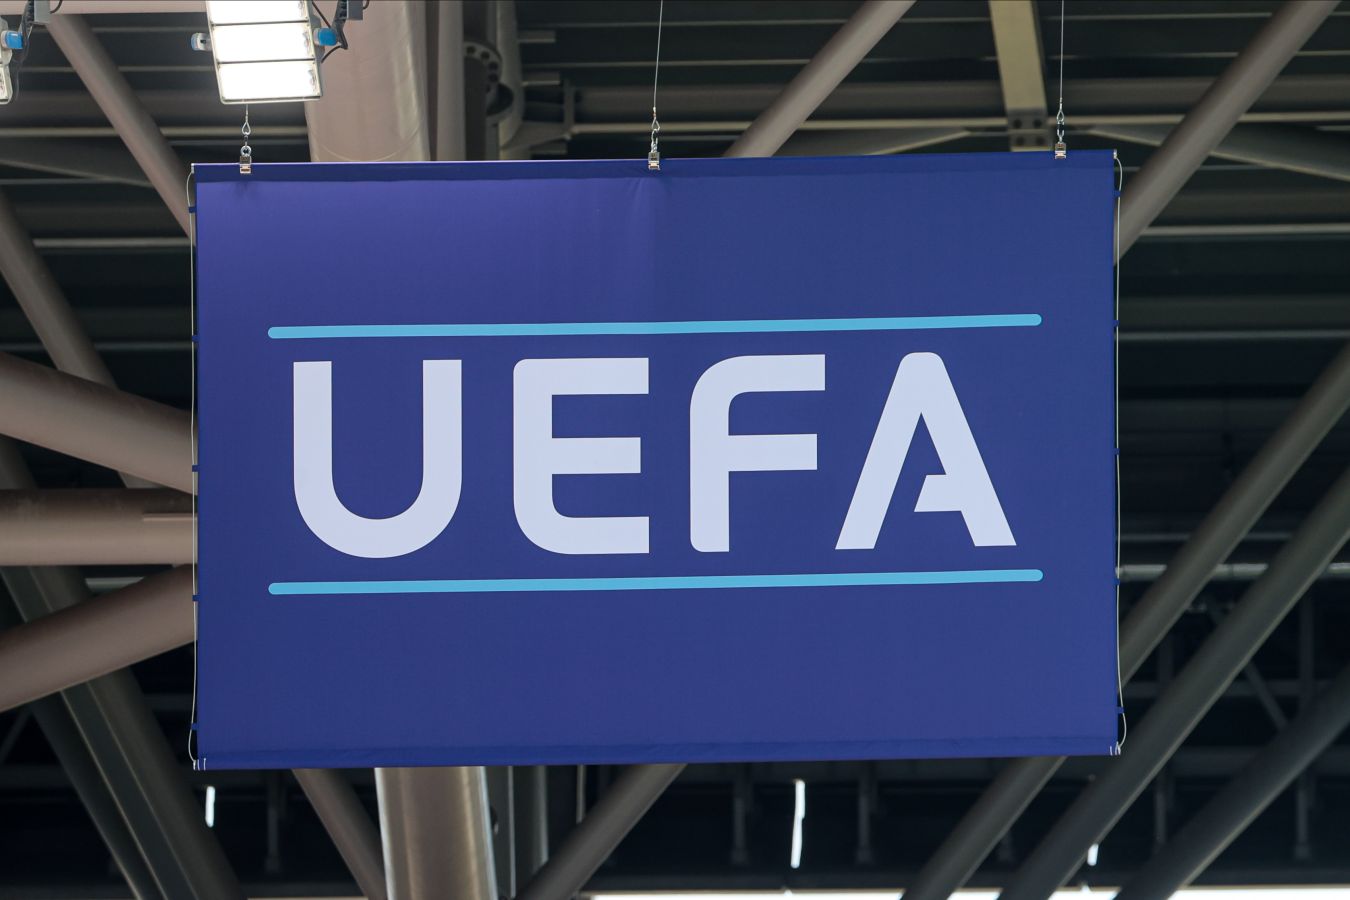 УЕФА выступил с заявлением по поводу событий вокруг финала Лиги чемпионов сезона-2021/2022